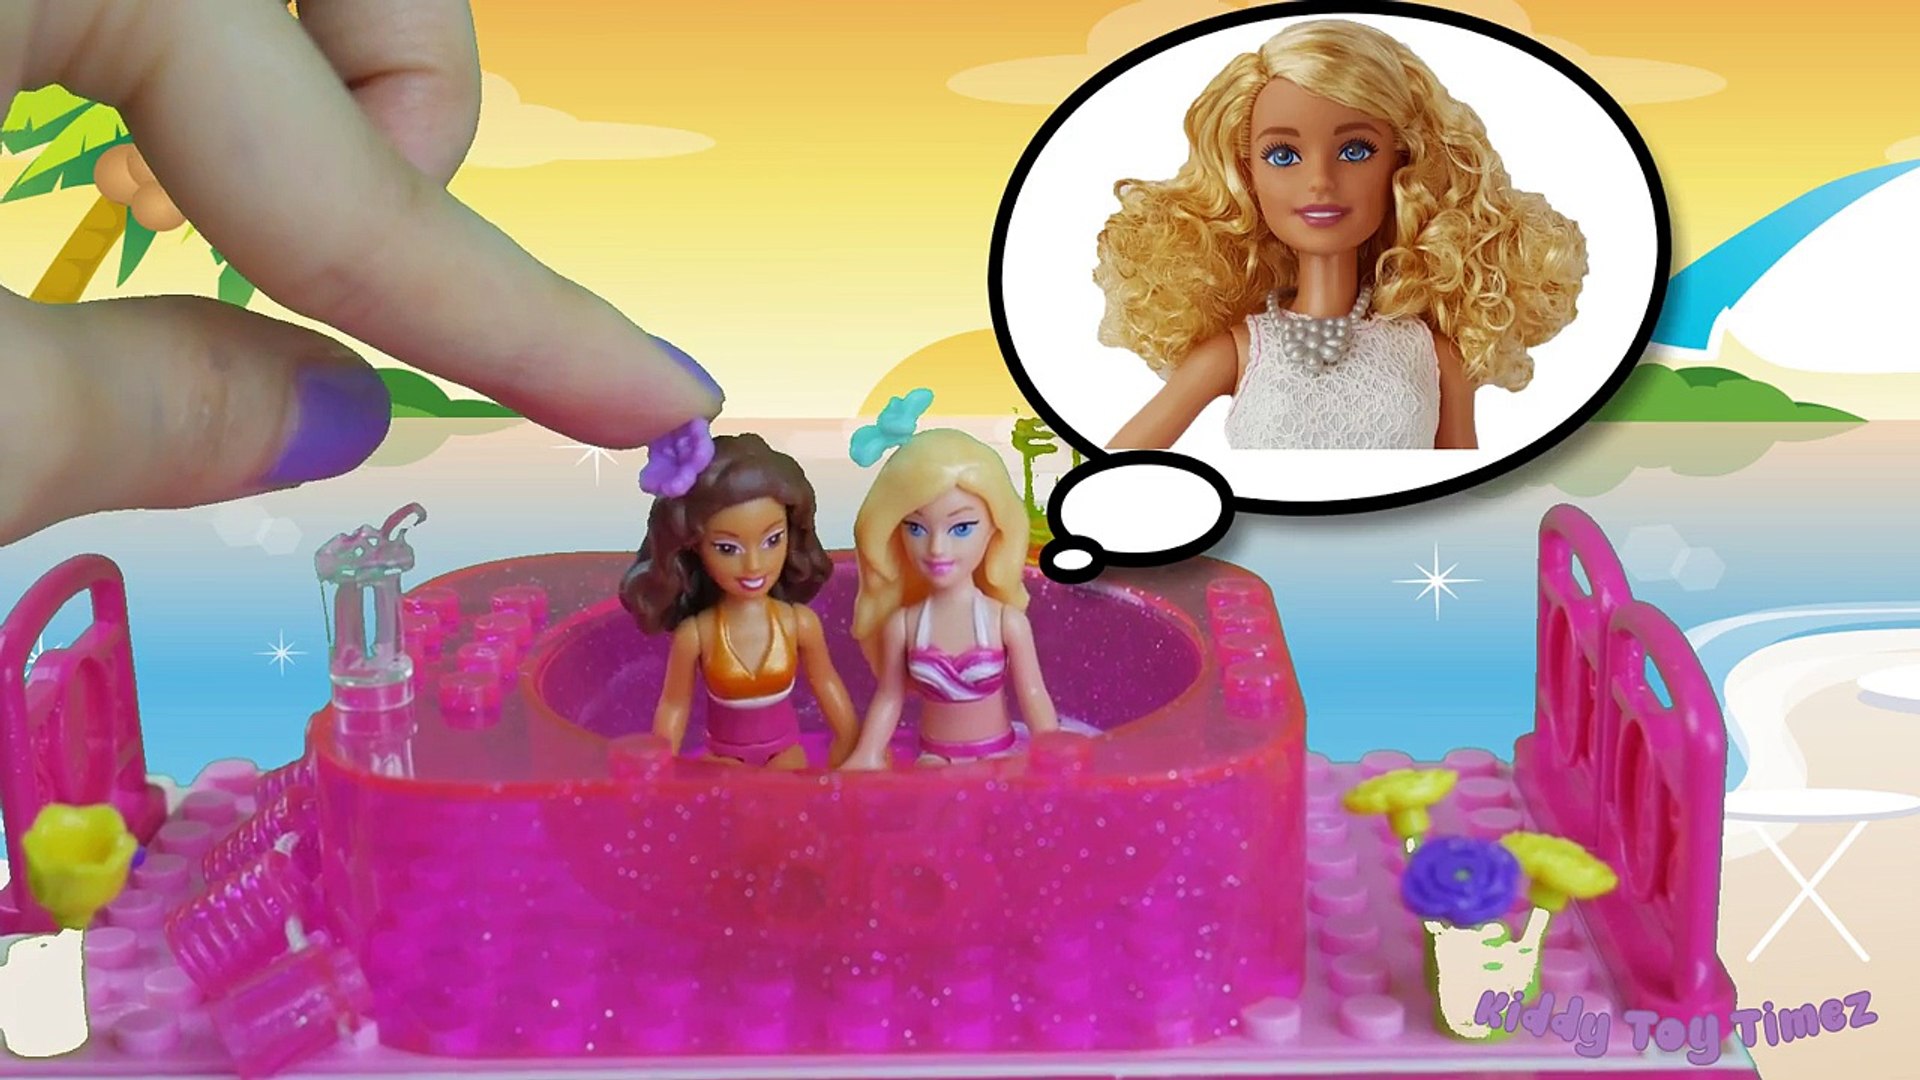 GIANT BARBIE POOPS ON CITY! Barbie poops herself, barbie poops her pants -  video Dailymotion